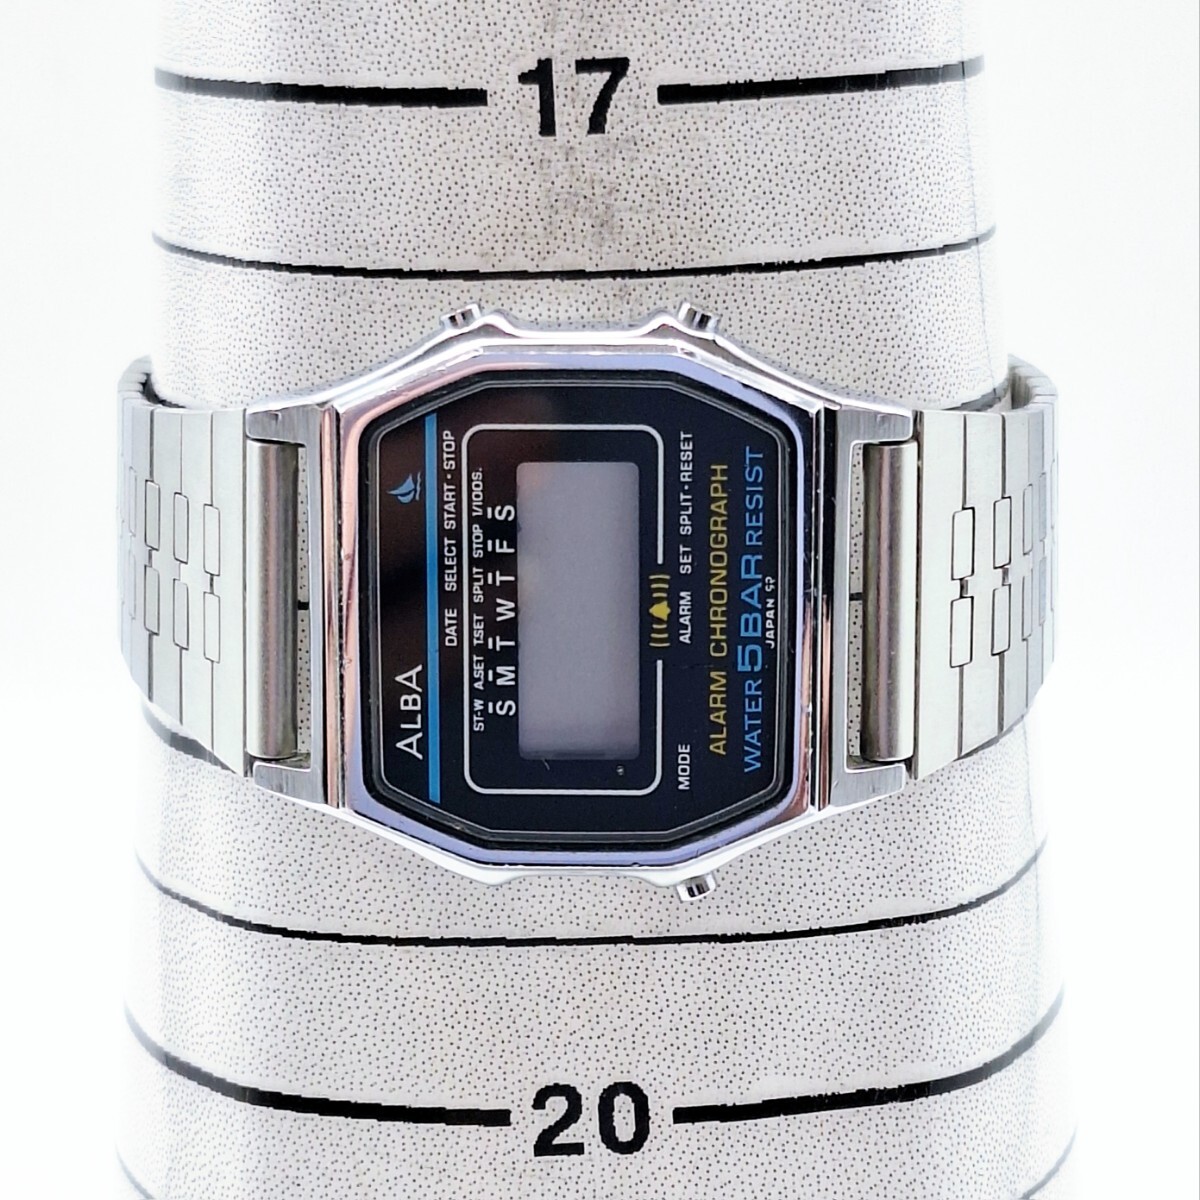 11 SEIKO ALBA セイコー アルバ Y799-4750 メンズ腕時計 腕時計 時計 アラームクロノグラフ デジタル 5BAR ウォッチ スライド式 WKの画像5